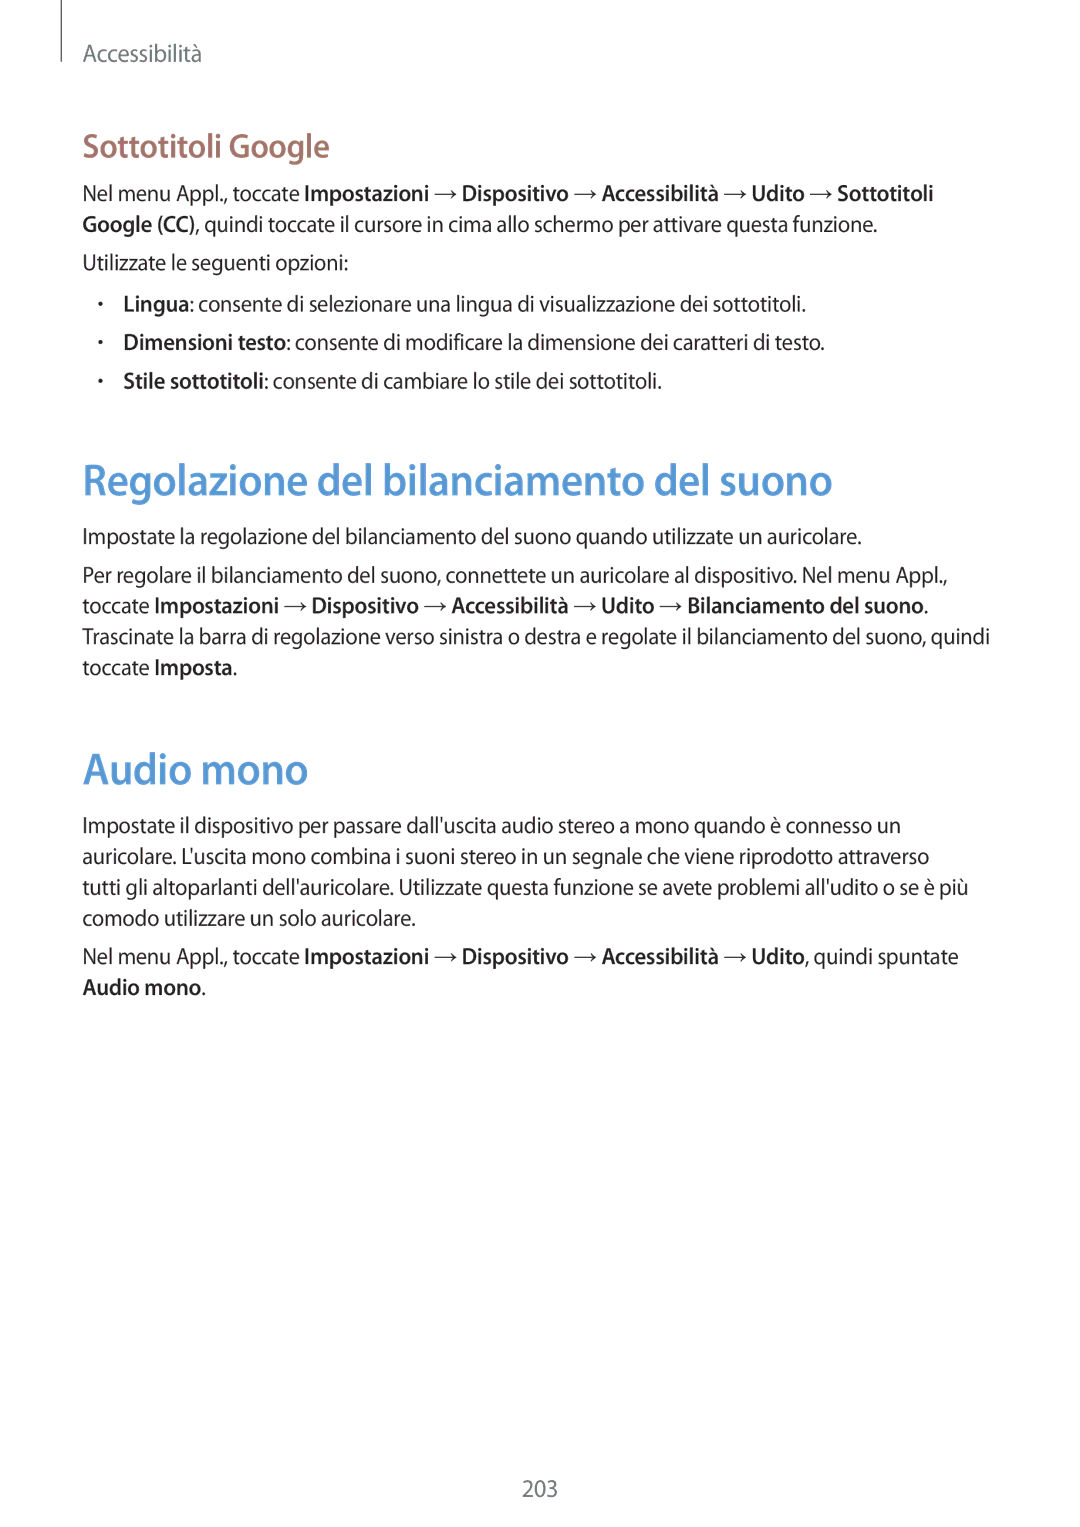 Samsung SM-T805NTSATIM, SM-T805NZWAXEO manual Regolazione del bilanciamento del suono, Audio mono, Sottotitoli Google 